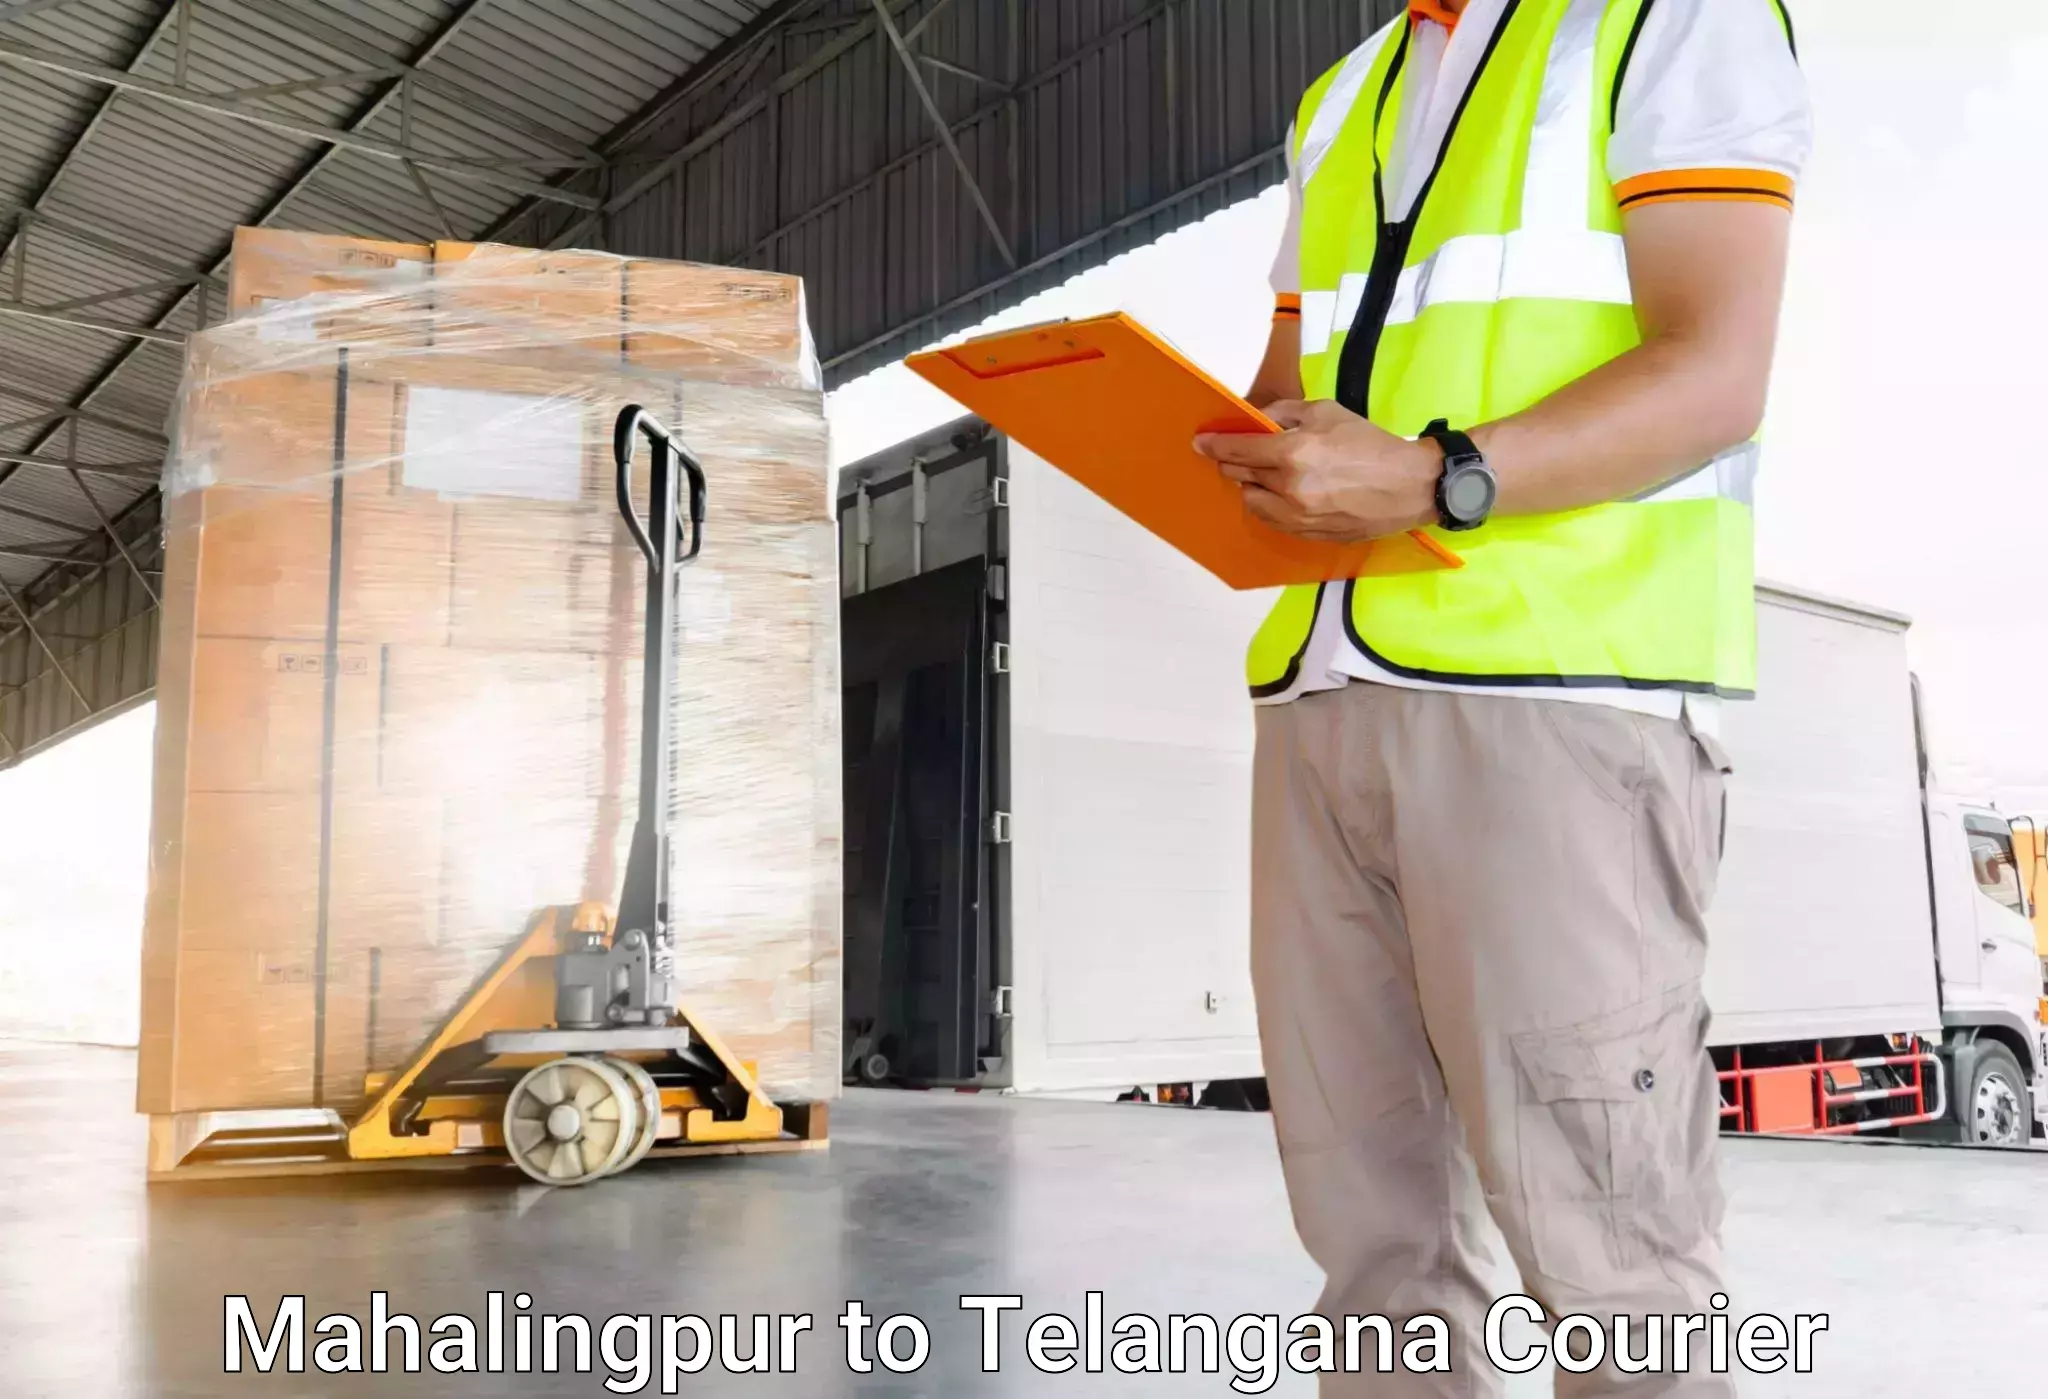 Baggage transport network Mahalingpur to Thirumalagiri